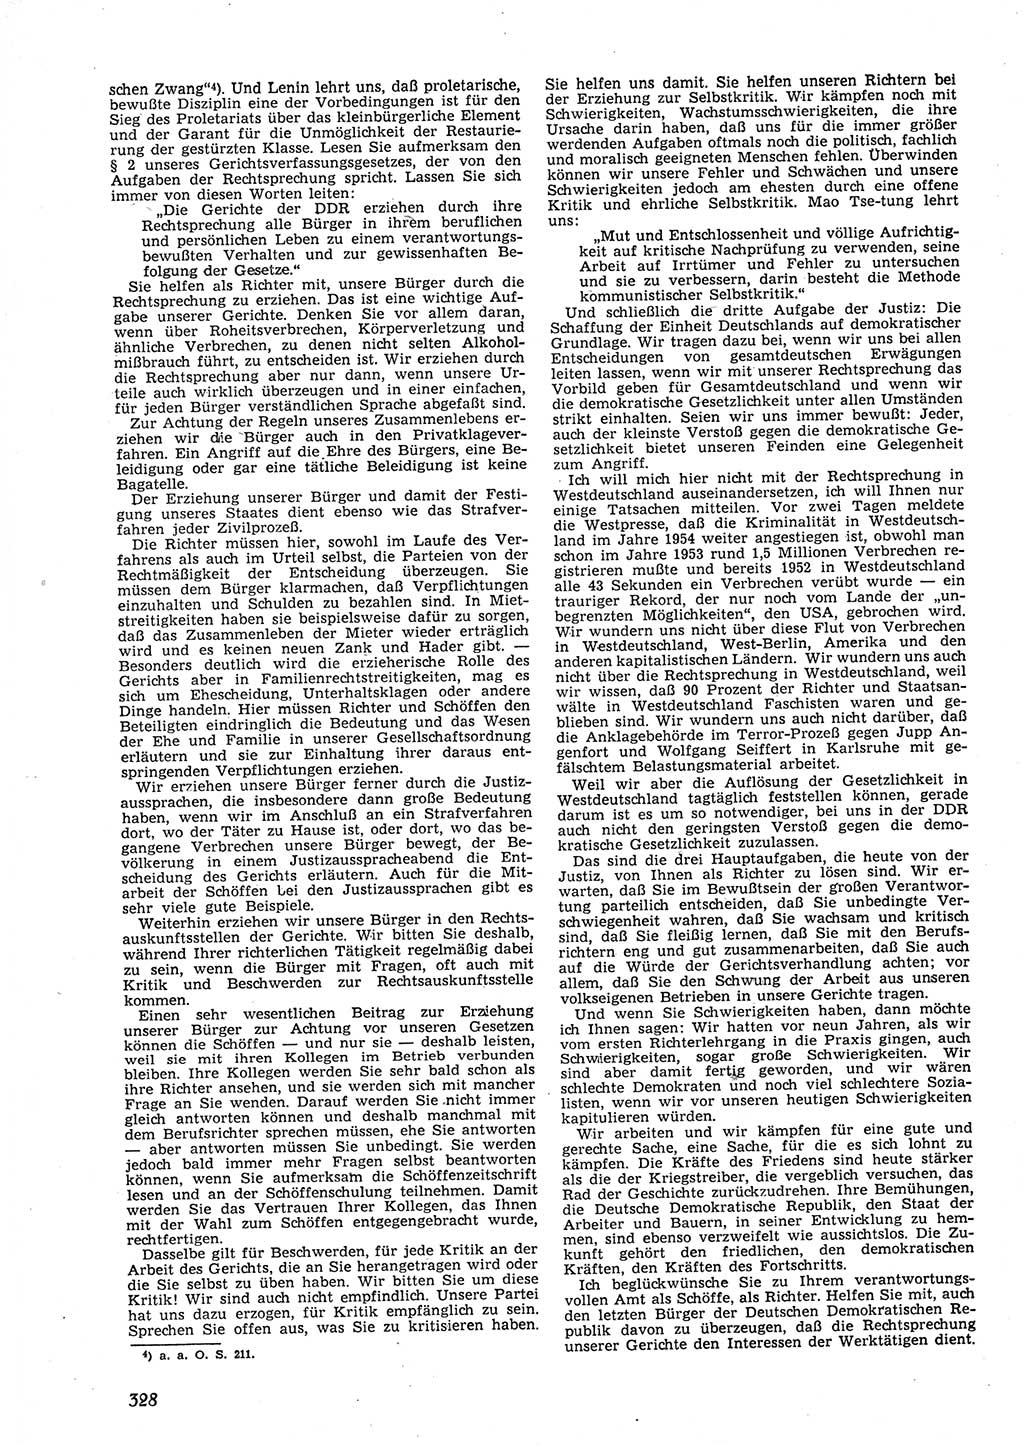 Neue Justiz (NJ), Zeitschrift für Recht und Rechtswissenschaft [Deutsche Demokratische Republik (DDR)], 9. Jahrgang 1955, Seite 328 (NJ DDR 1955, S. 328)